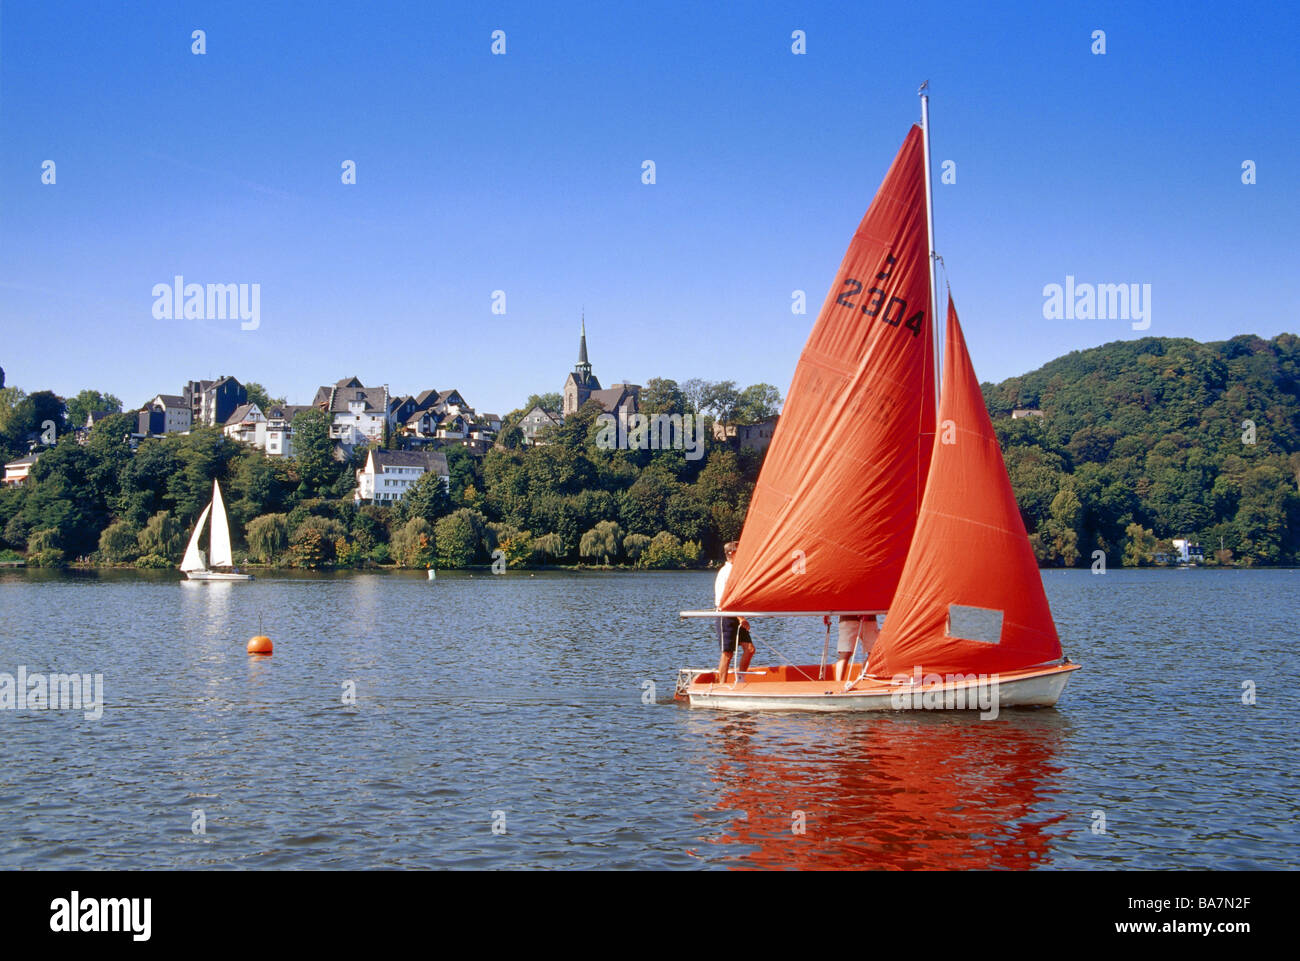 Segelboote auf dem See Harkort See, Wetter, Ruhrgebiet, Ruhr, Nordrhein Westfalen, Deutschland Stockfoto